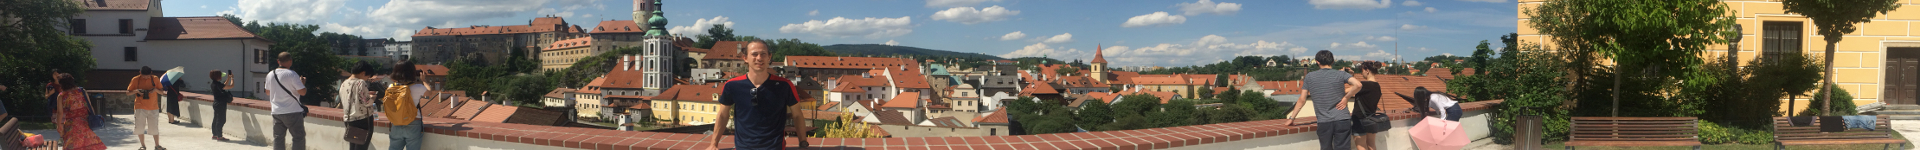 Castle - Český Krumlov, Czech Republic